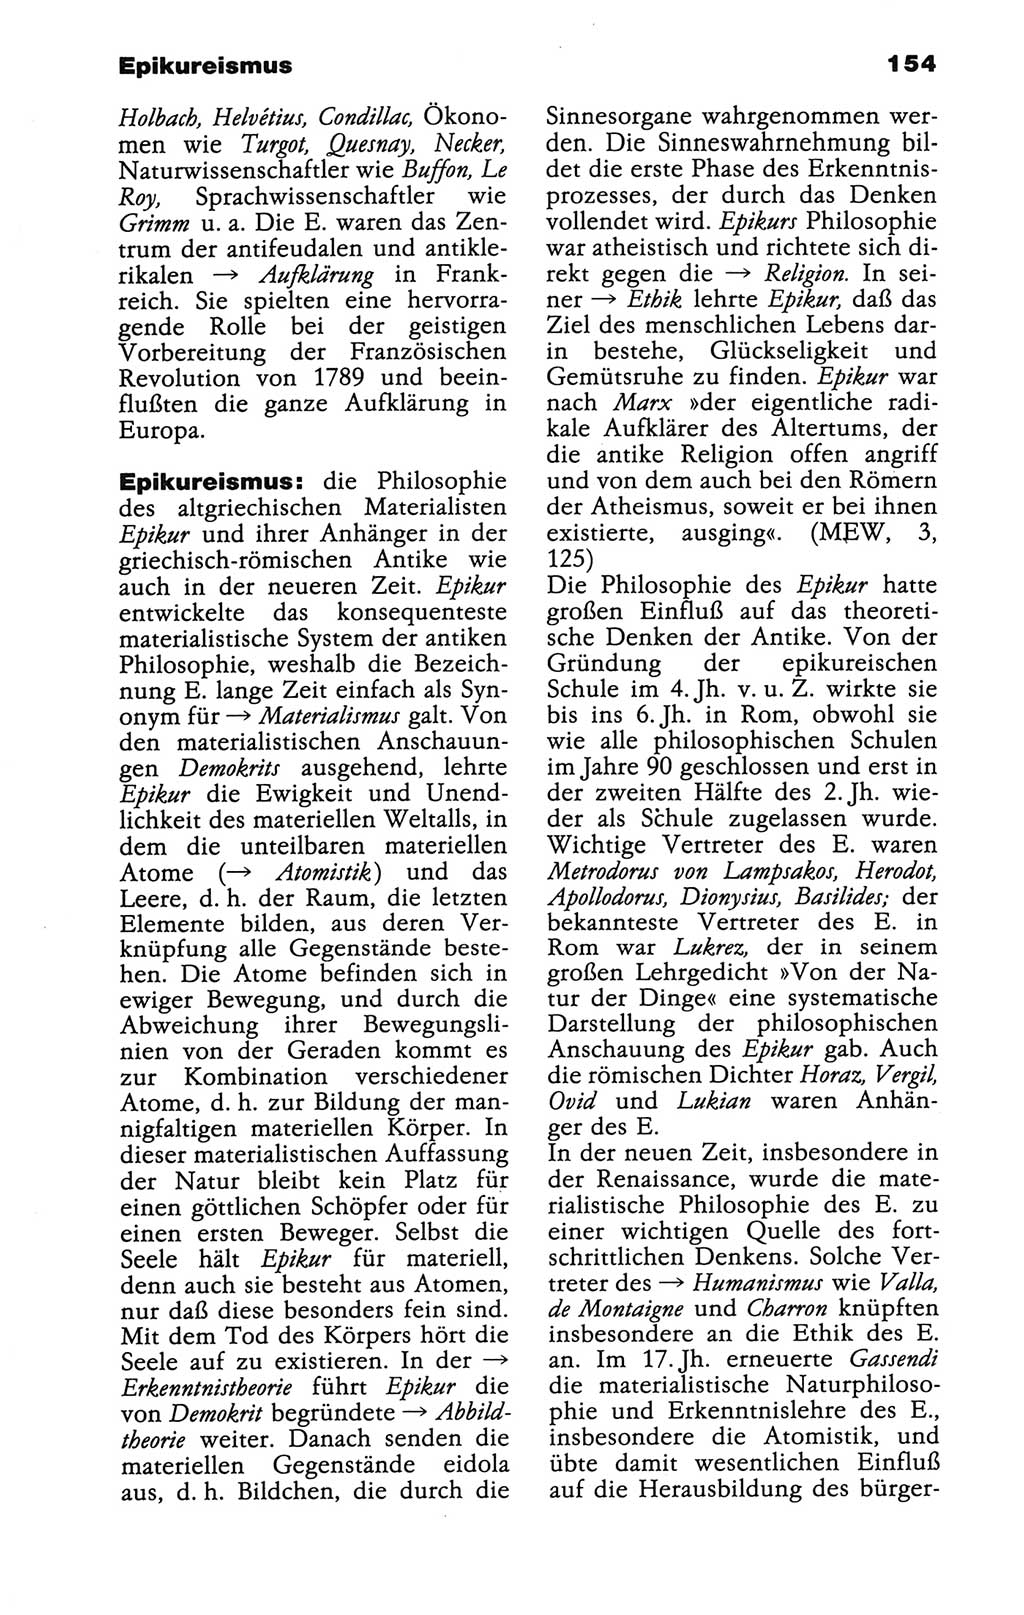 Wörterbuch der marxistisch-leninistischen Philosophie [Deutsche Demokratische Republik (DDR)] 1986, Seite 154 (Wb. ML Phil. DDR 1986, S. 154)